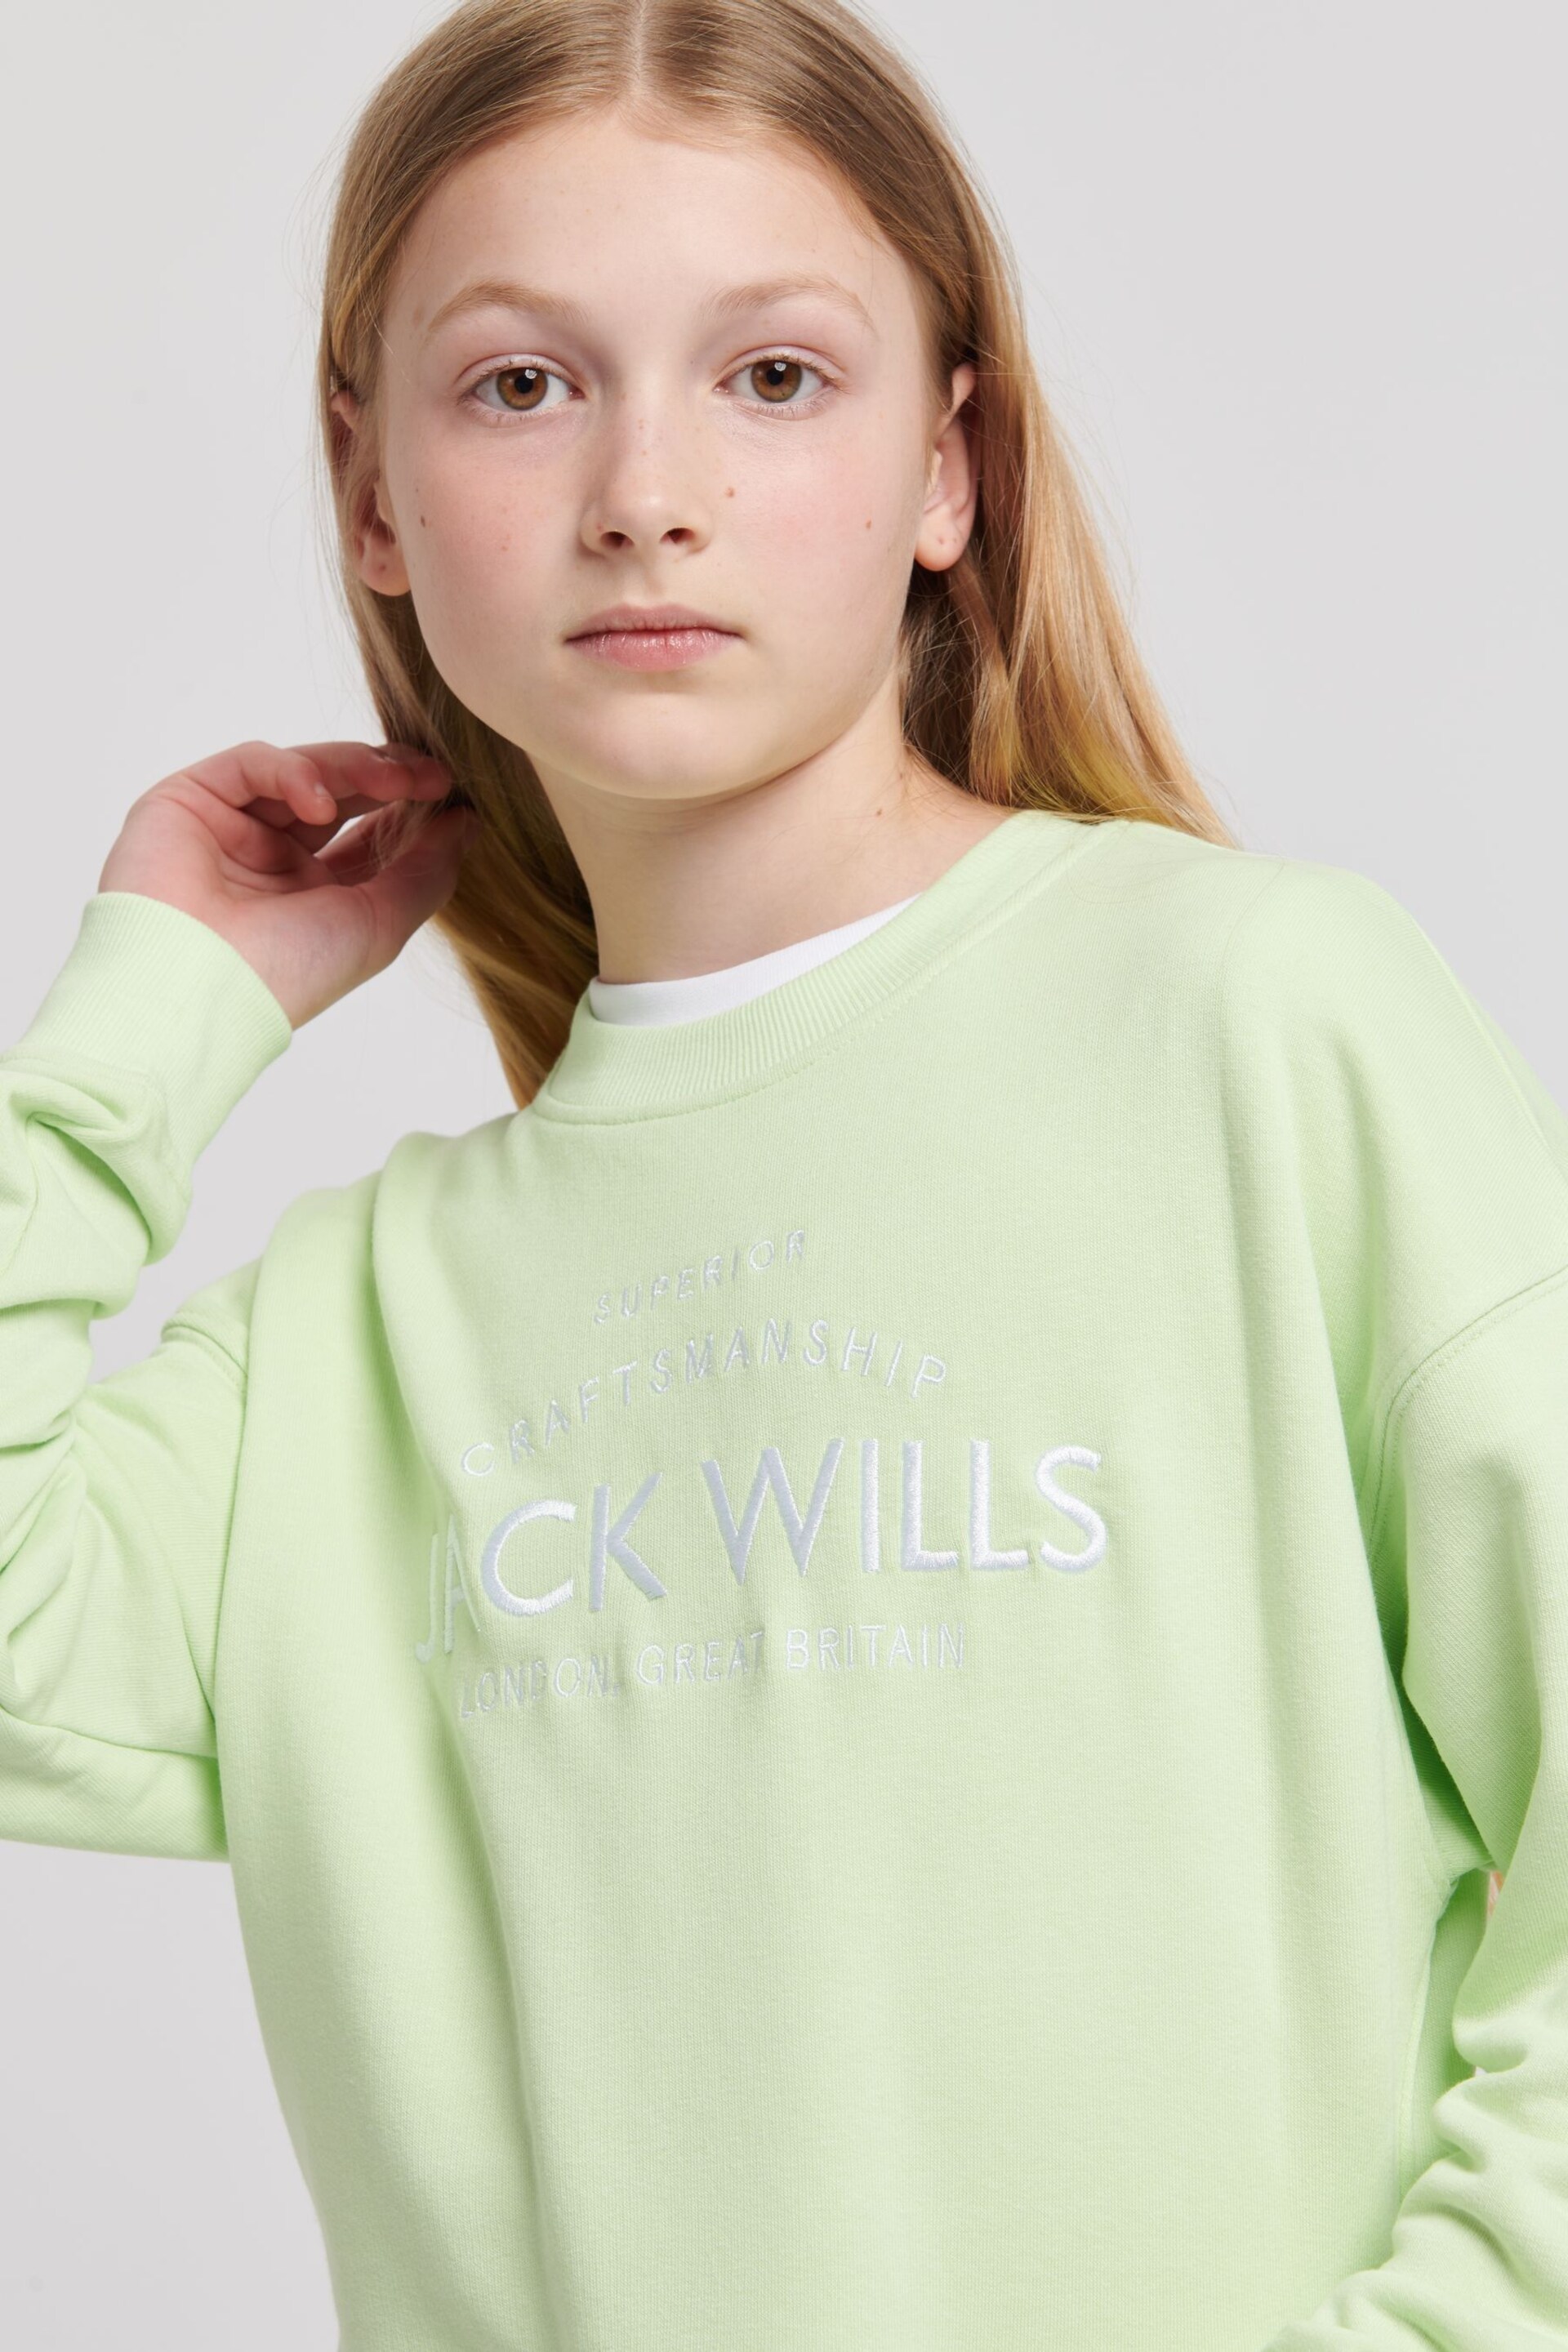 Jack Wills Loose Fit Girls Green Huntston Crew Sweatshirt - Image 3 of 7